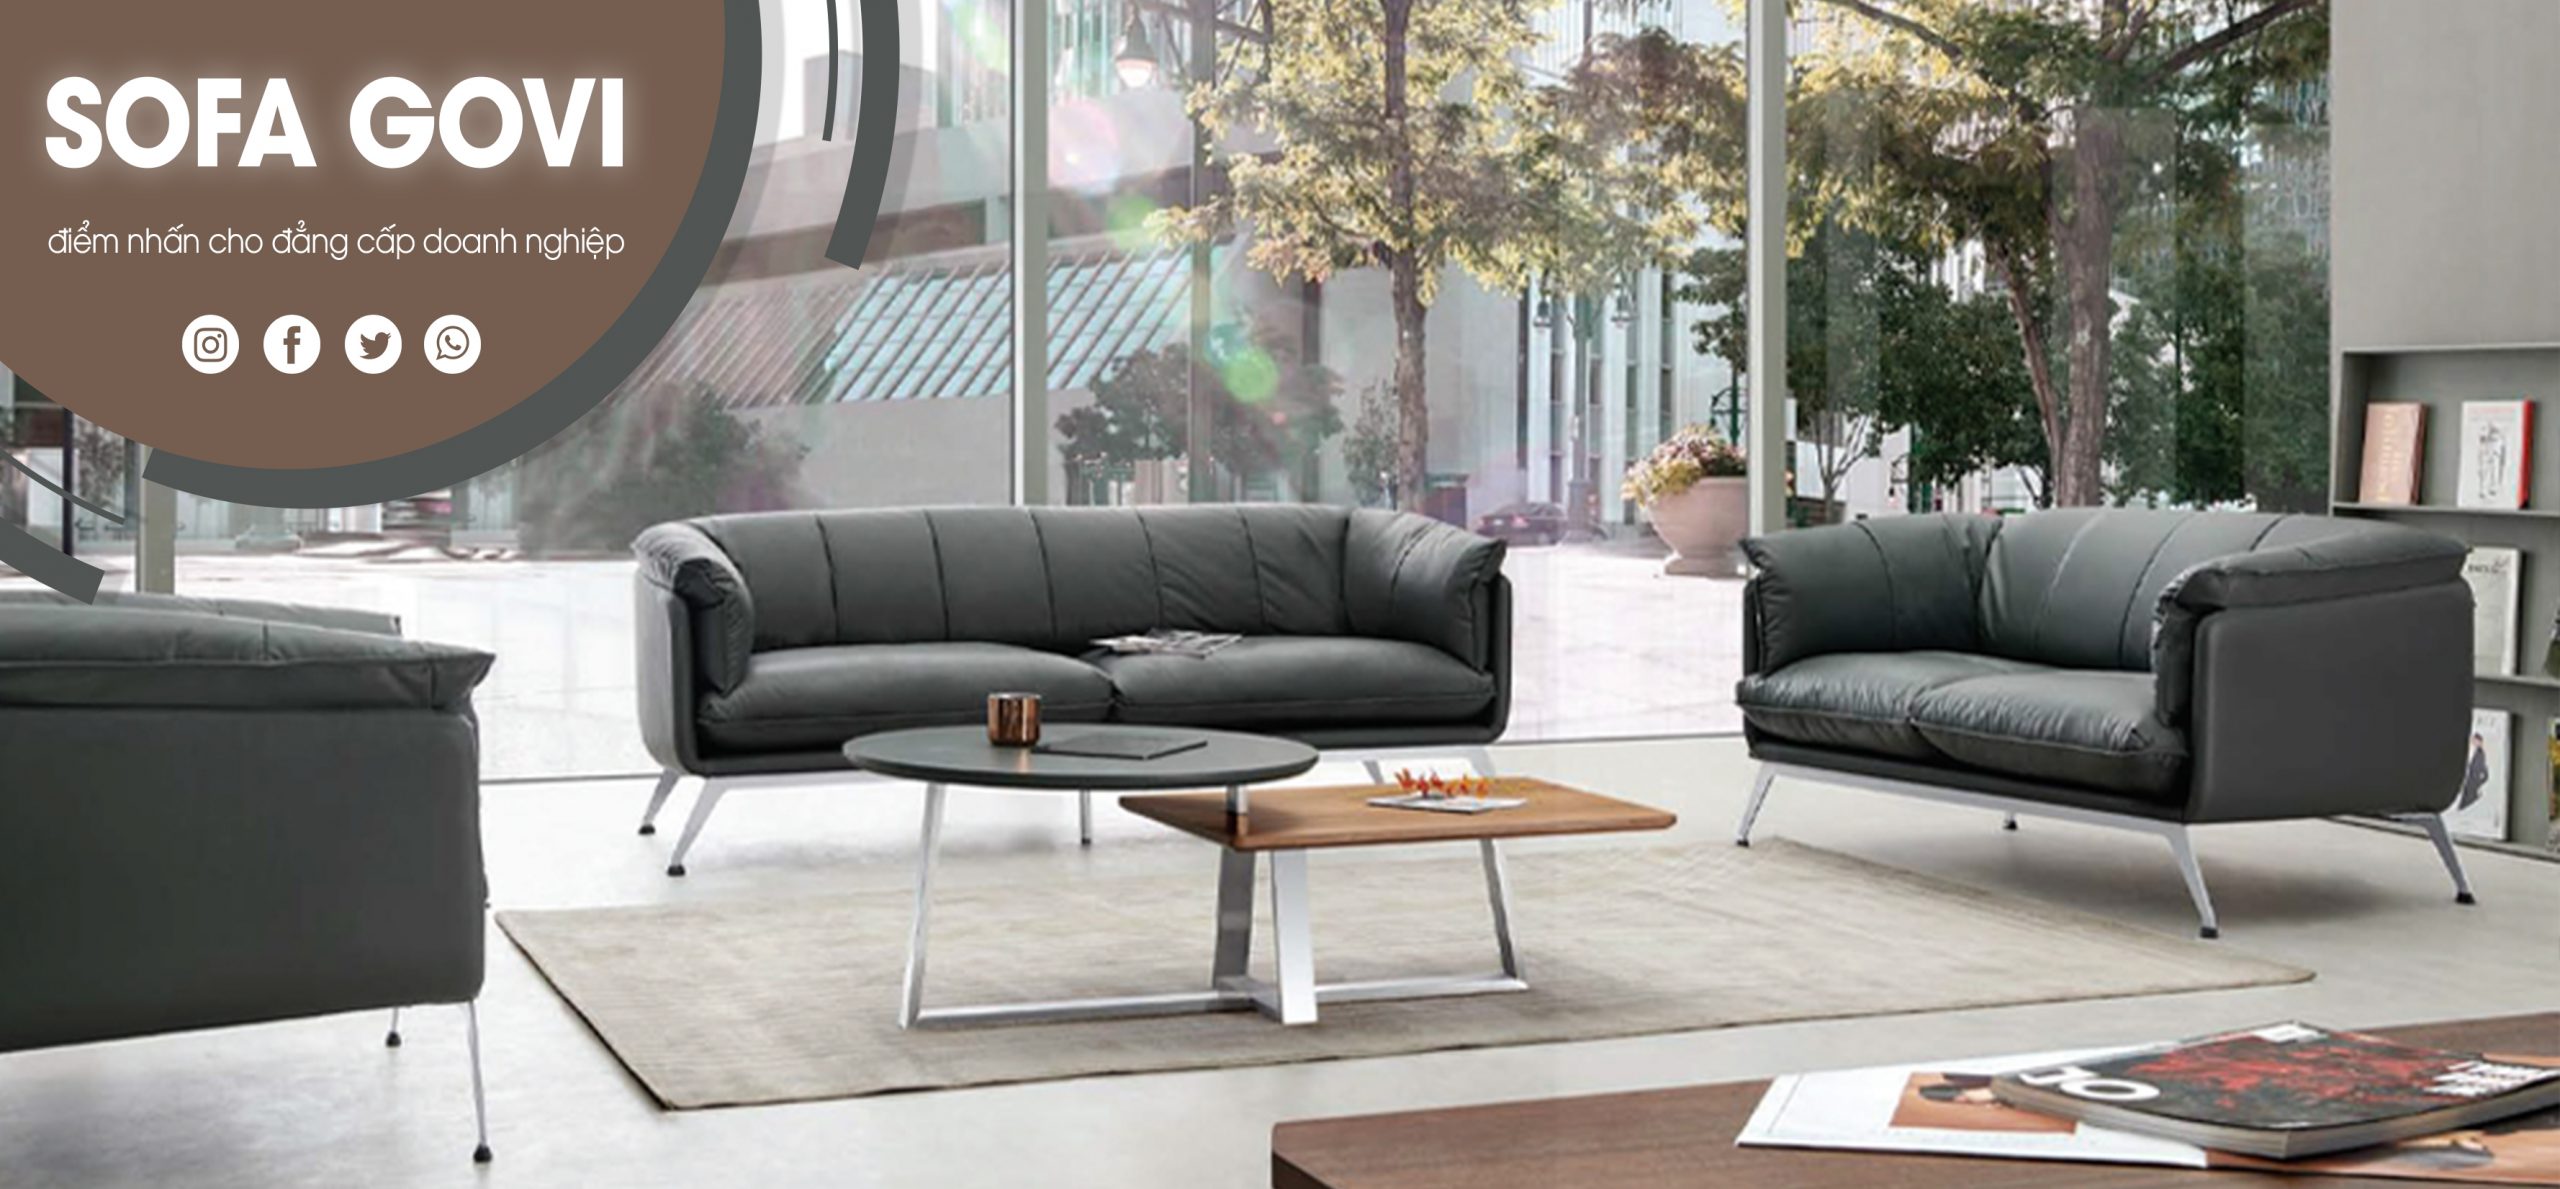 85 mẫu sofa văn phòng hiện đại, sang trọng, chất lượng cao